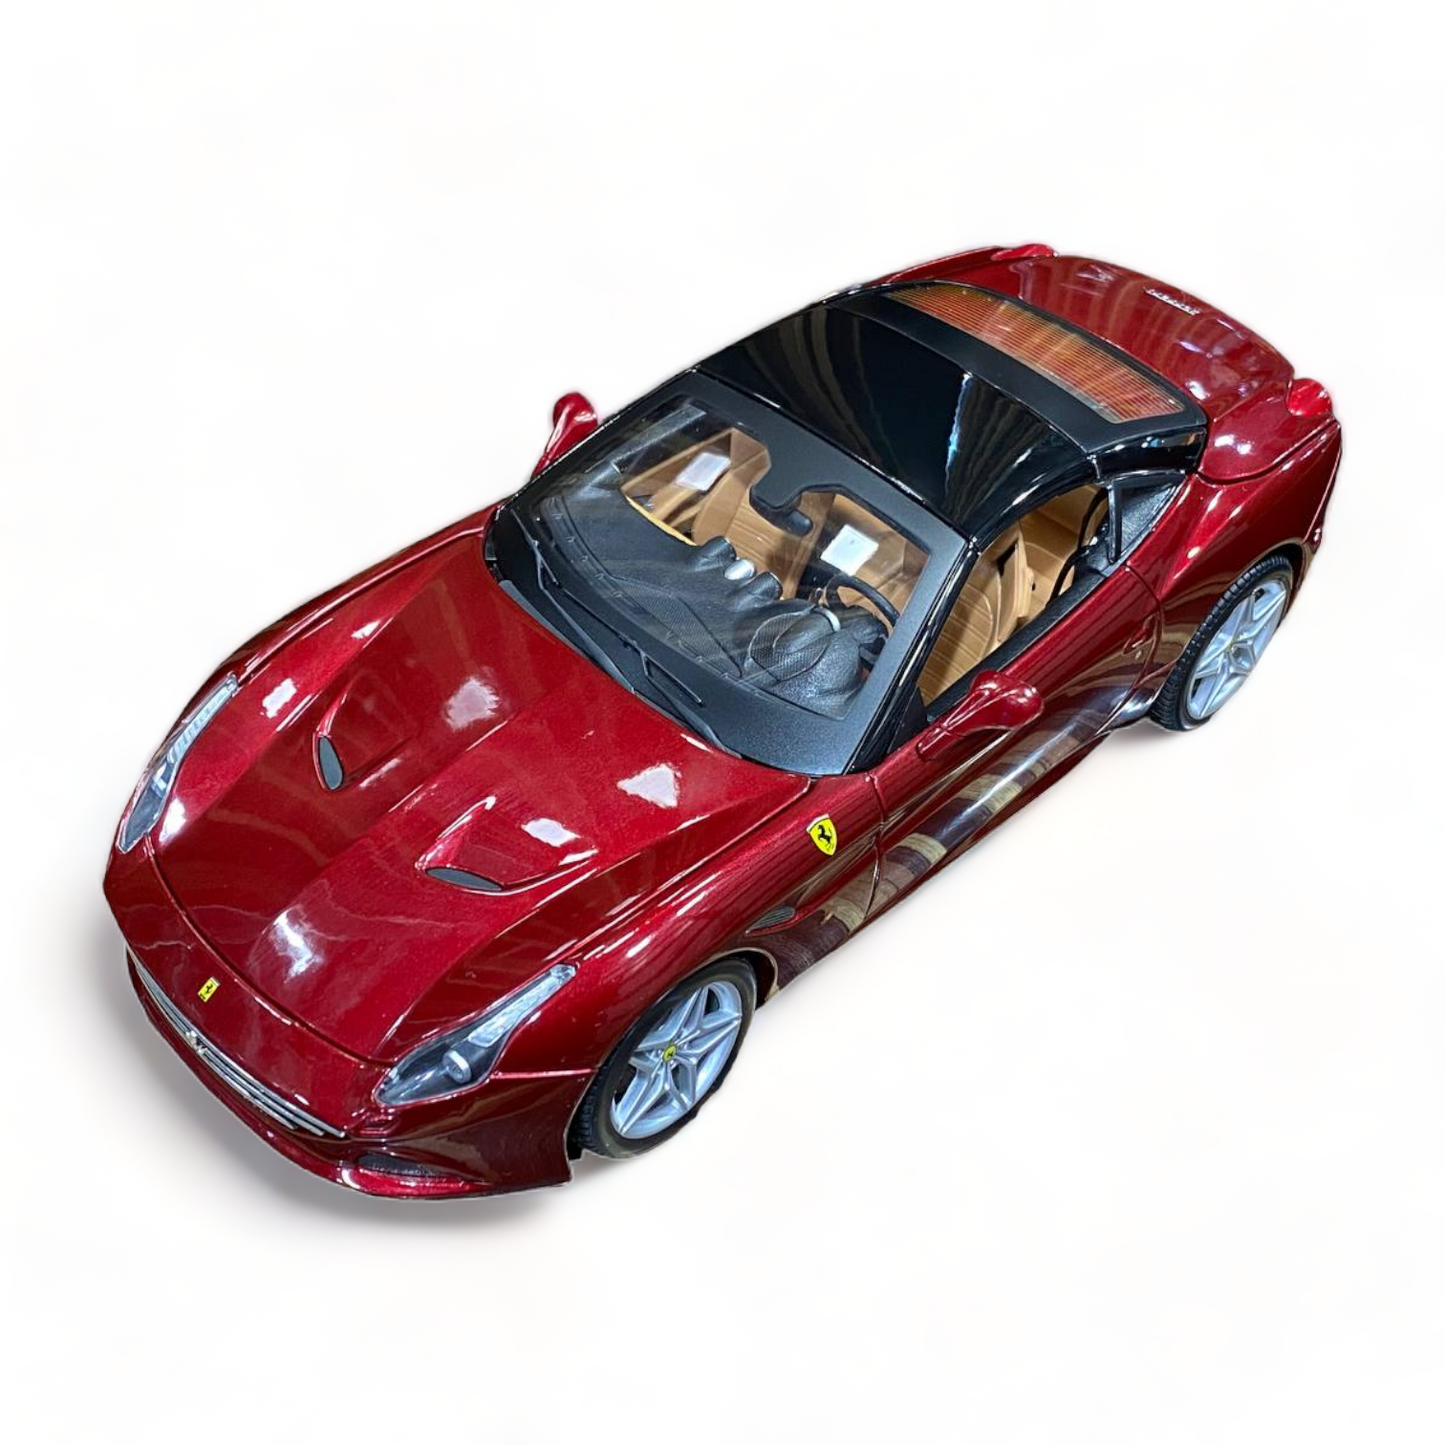 1/18 Diecast Ferrari California T Red "Signature Series" Bburago Scale Model Car|Sold in Dturman.com Dubai UAE.